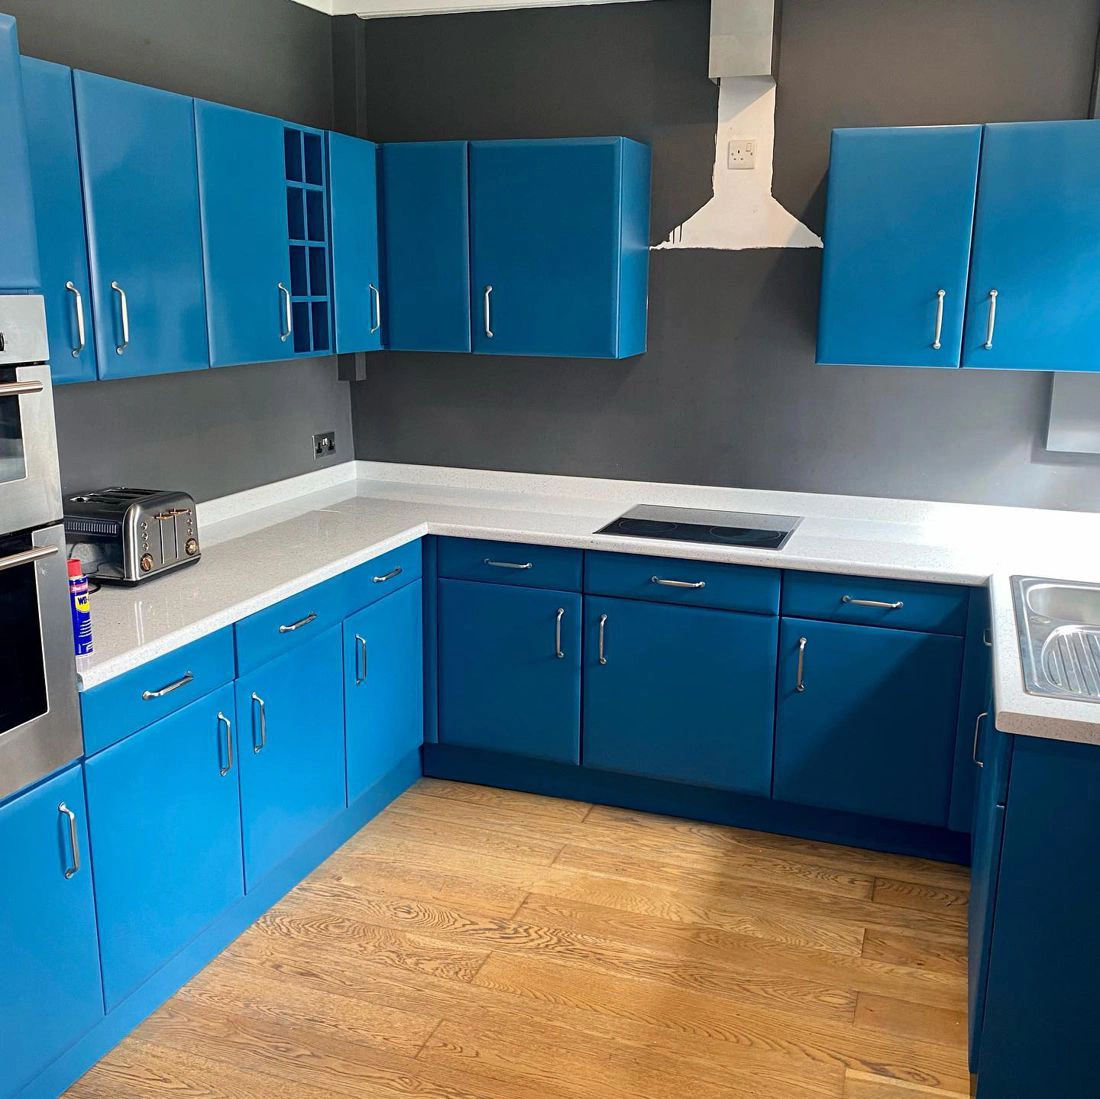 Azure blue RAL 5009 kitchen